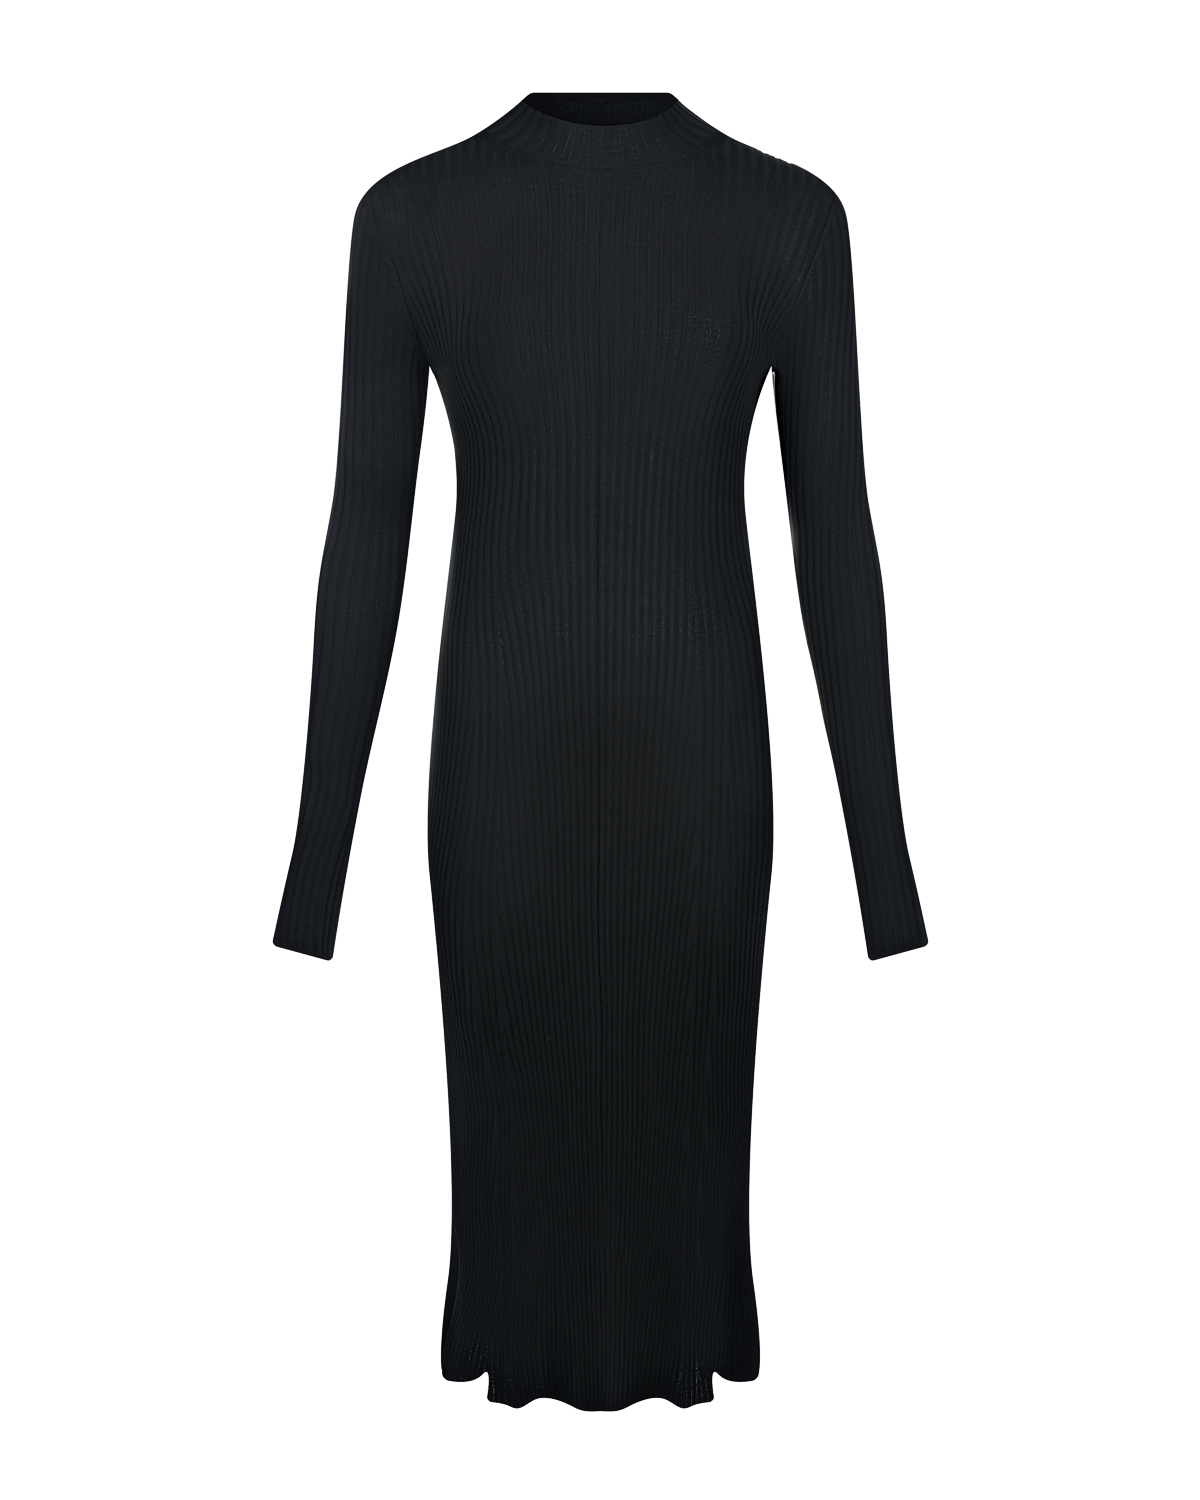 Черное платье с вырезом на спине MRZ, размер 40, цвет черный - фото 1